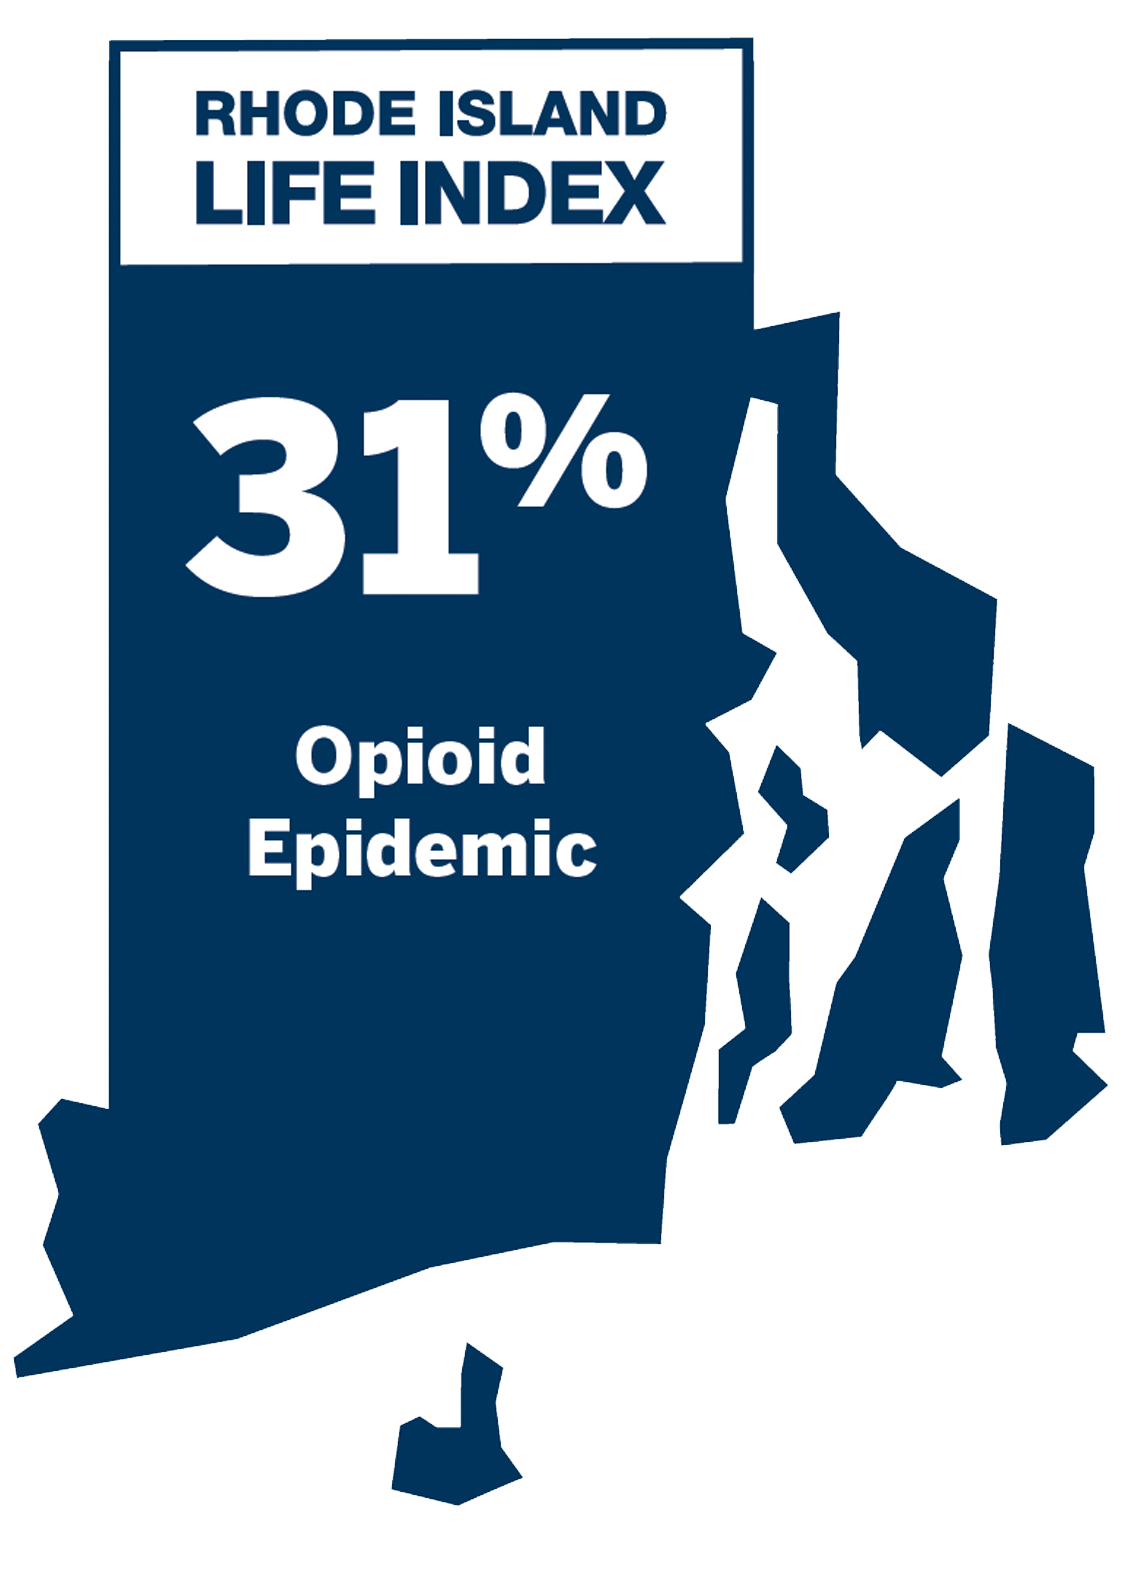 Opioid Epidemic: 31%